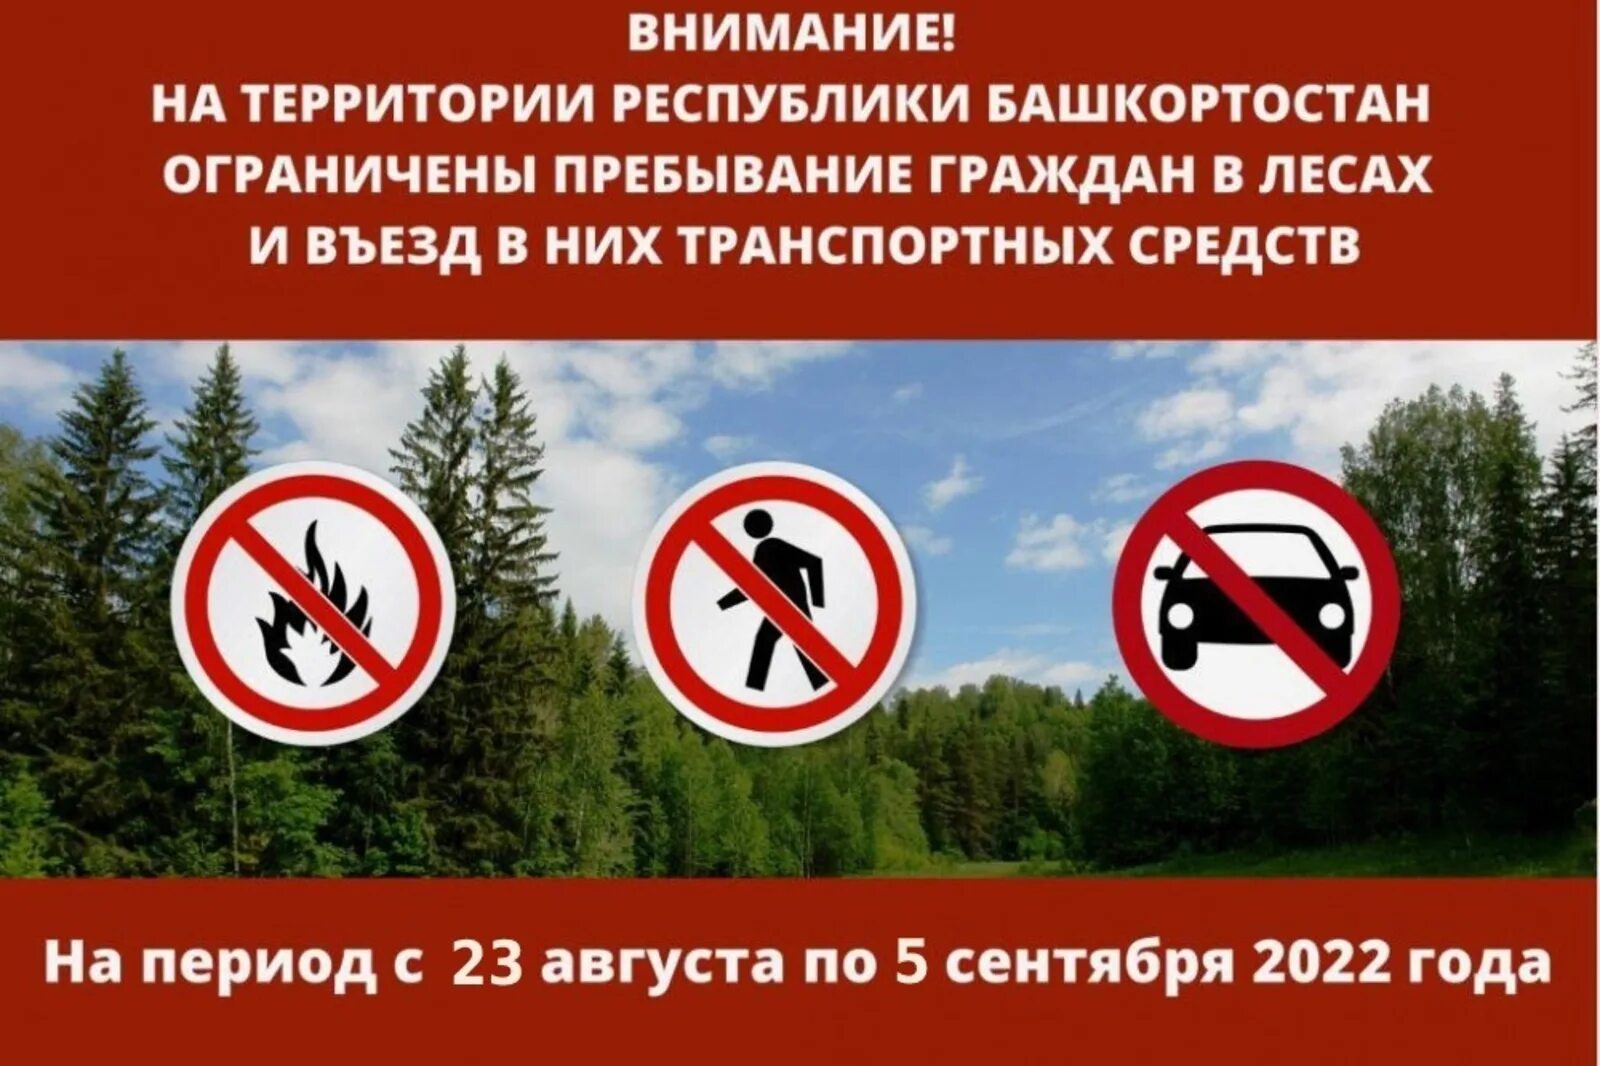 Можно ли посещать леса. Ограничено пребывание граждан в лесах. Запрещено прибывание в лесу. Запрет на пребывание граждан в лесах. Ограничение посещения лесов.